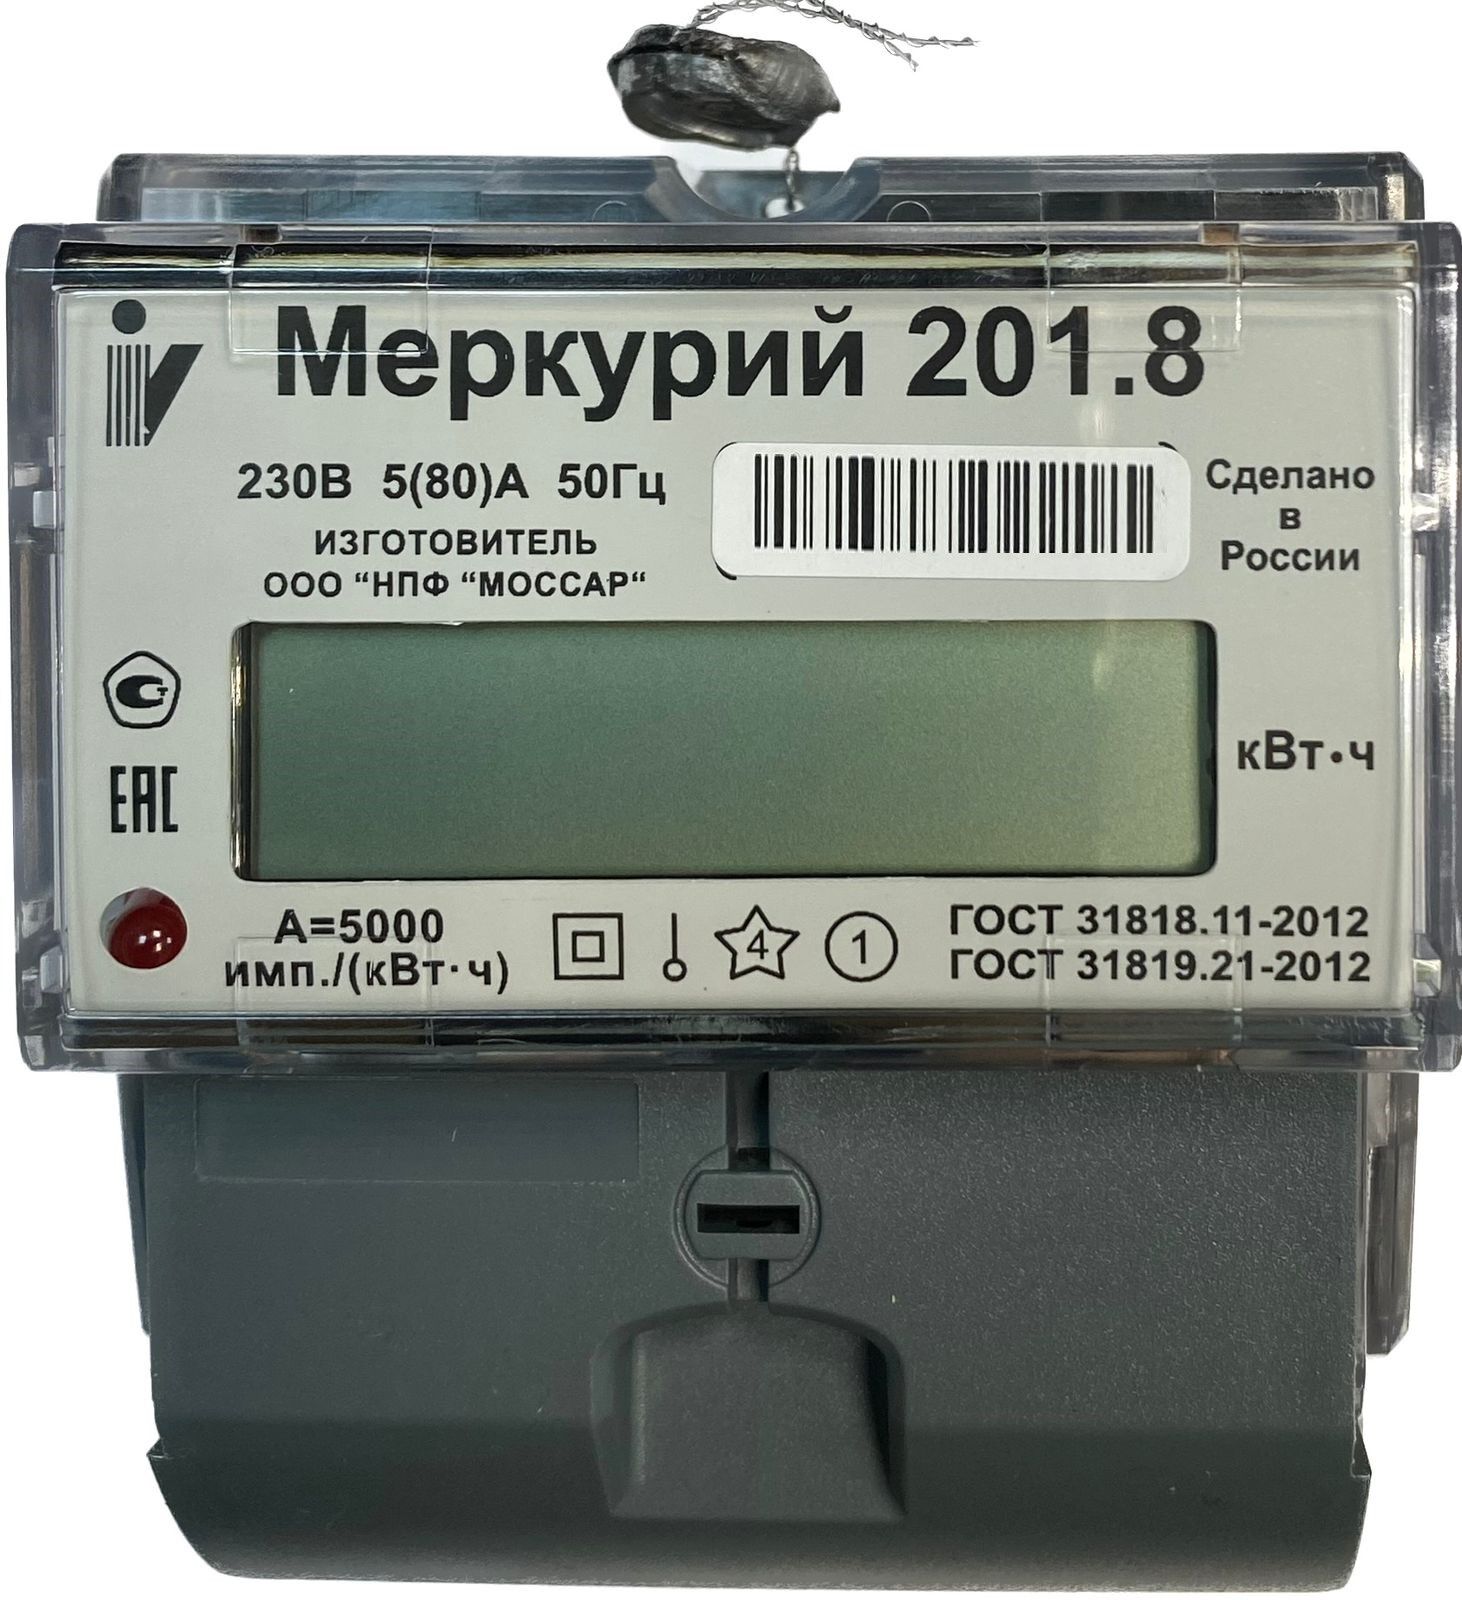 Счетчик электроэнергии Меркурий 201.8 5/80А Т1 D 230В ЖК 1